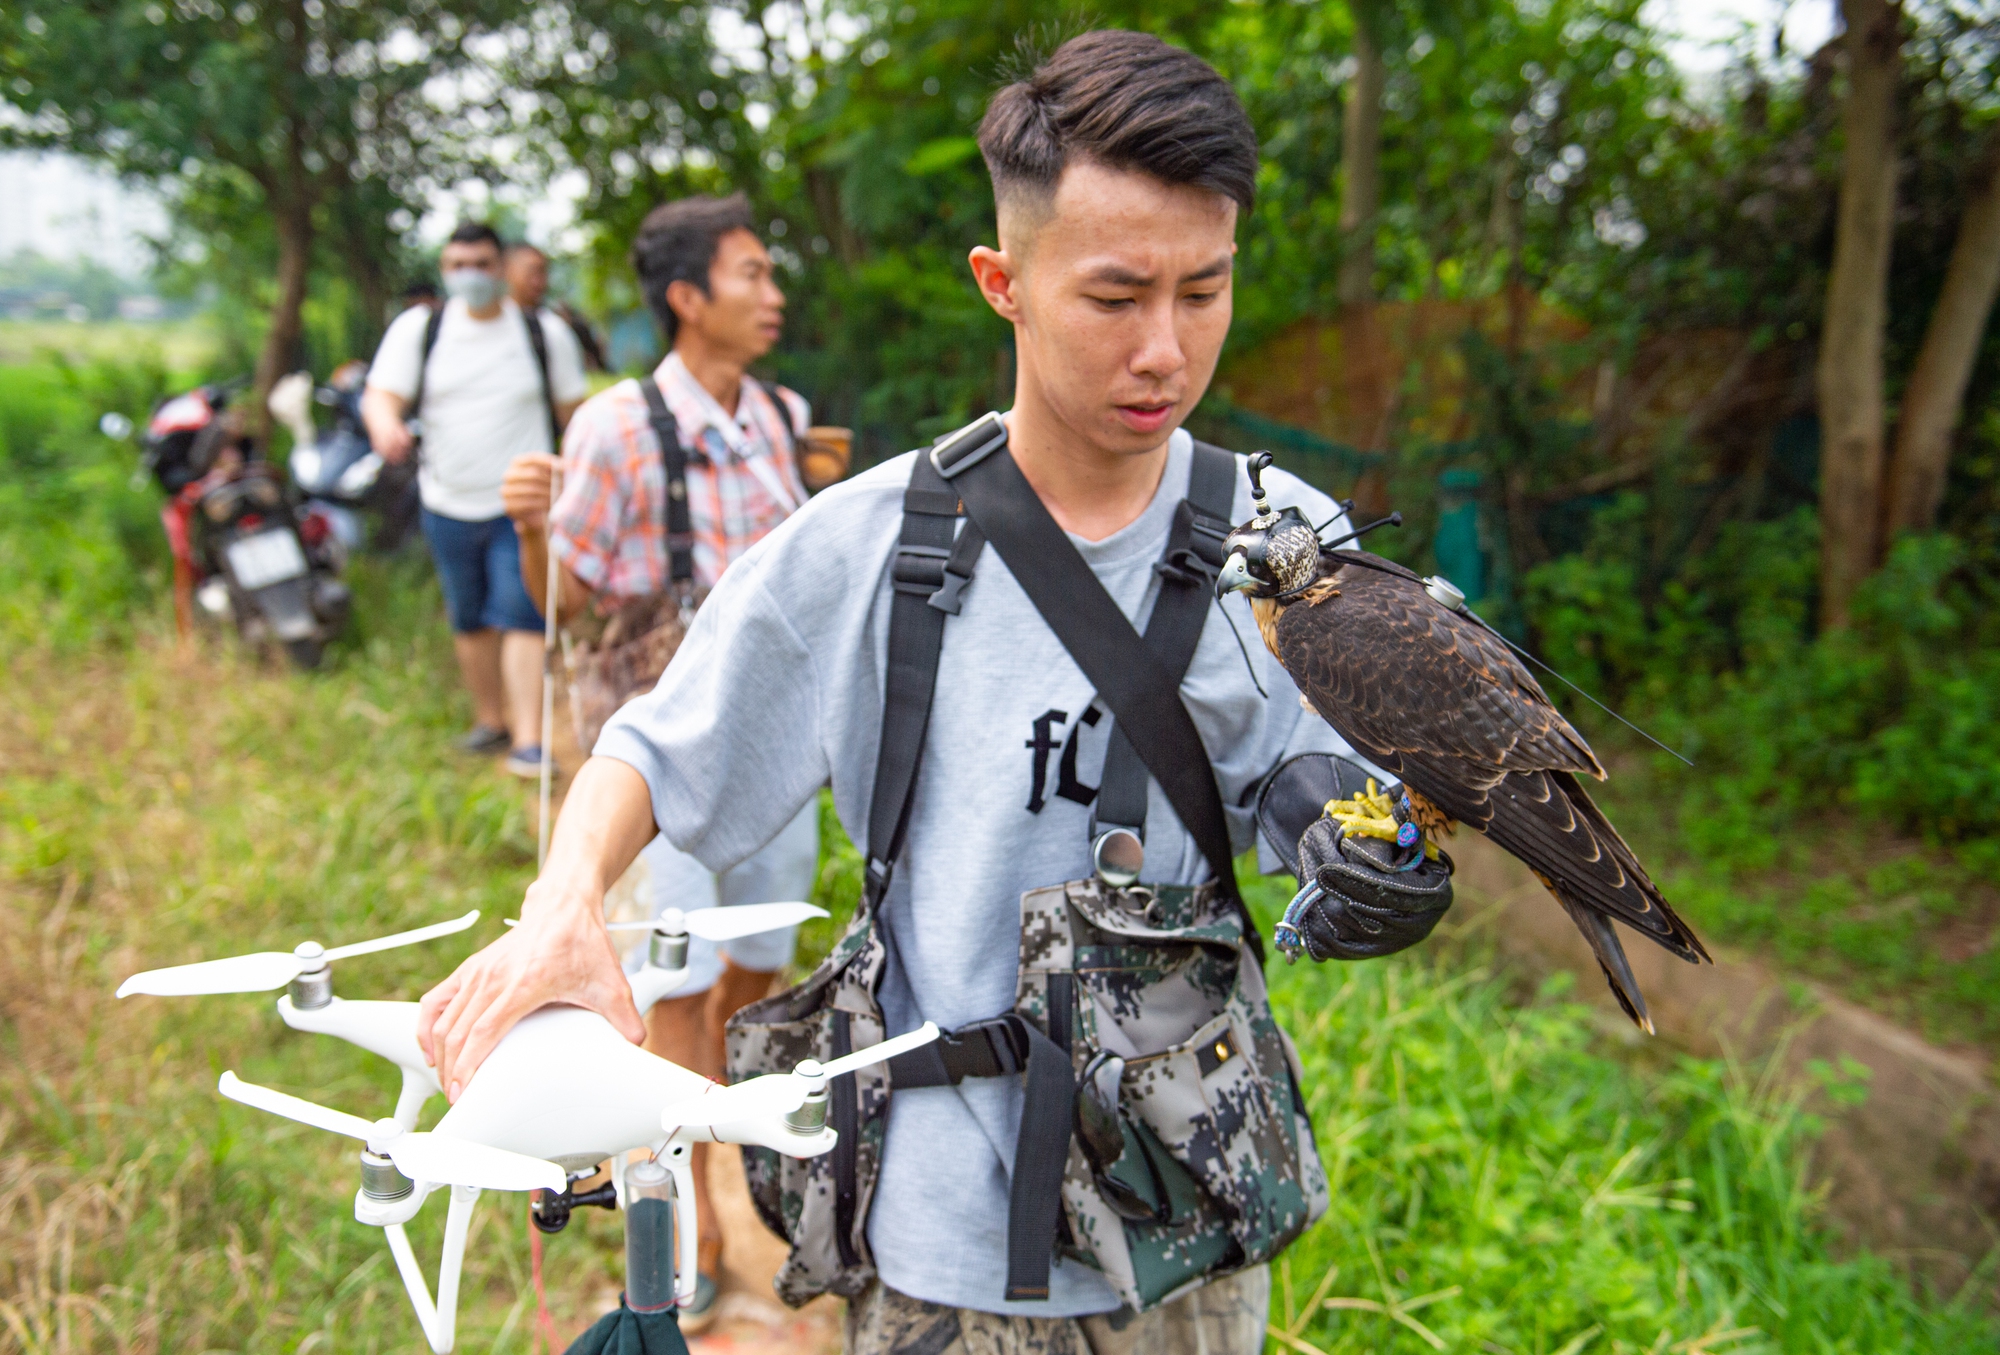 Ảnh: Dùng flycam, định vị GPS, tiêu tốn hàng chục triệu huấn luyện chim săn mồi để giải trí - Ảnh 2.